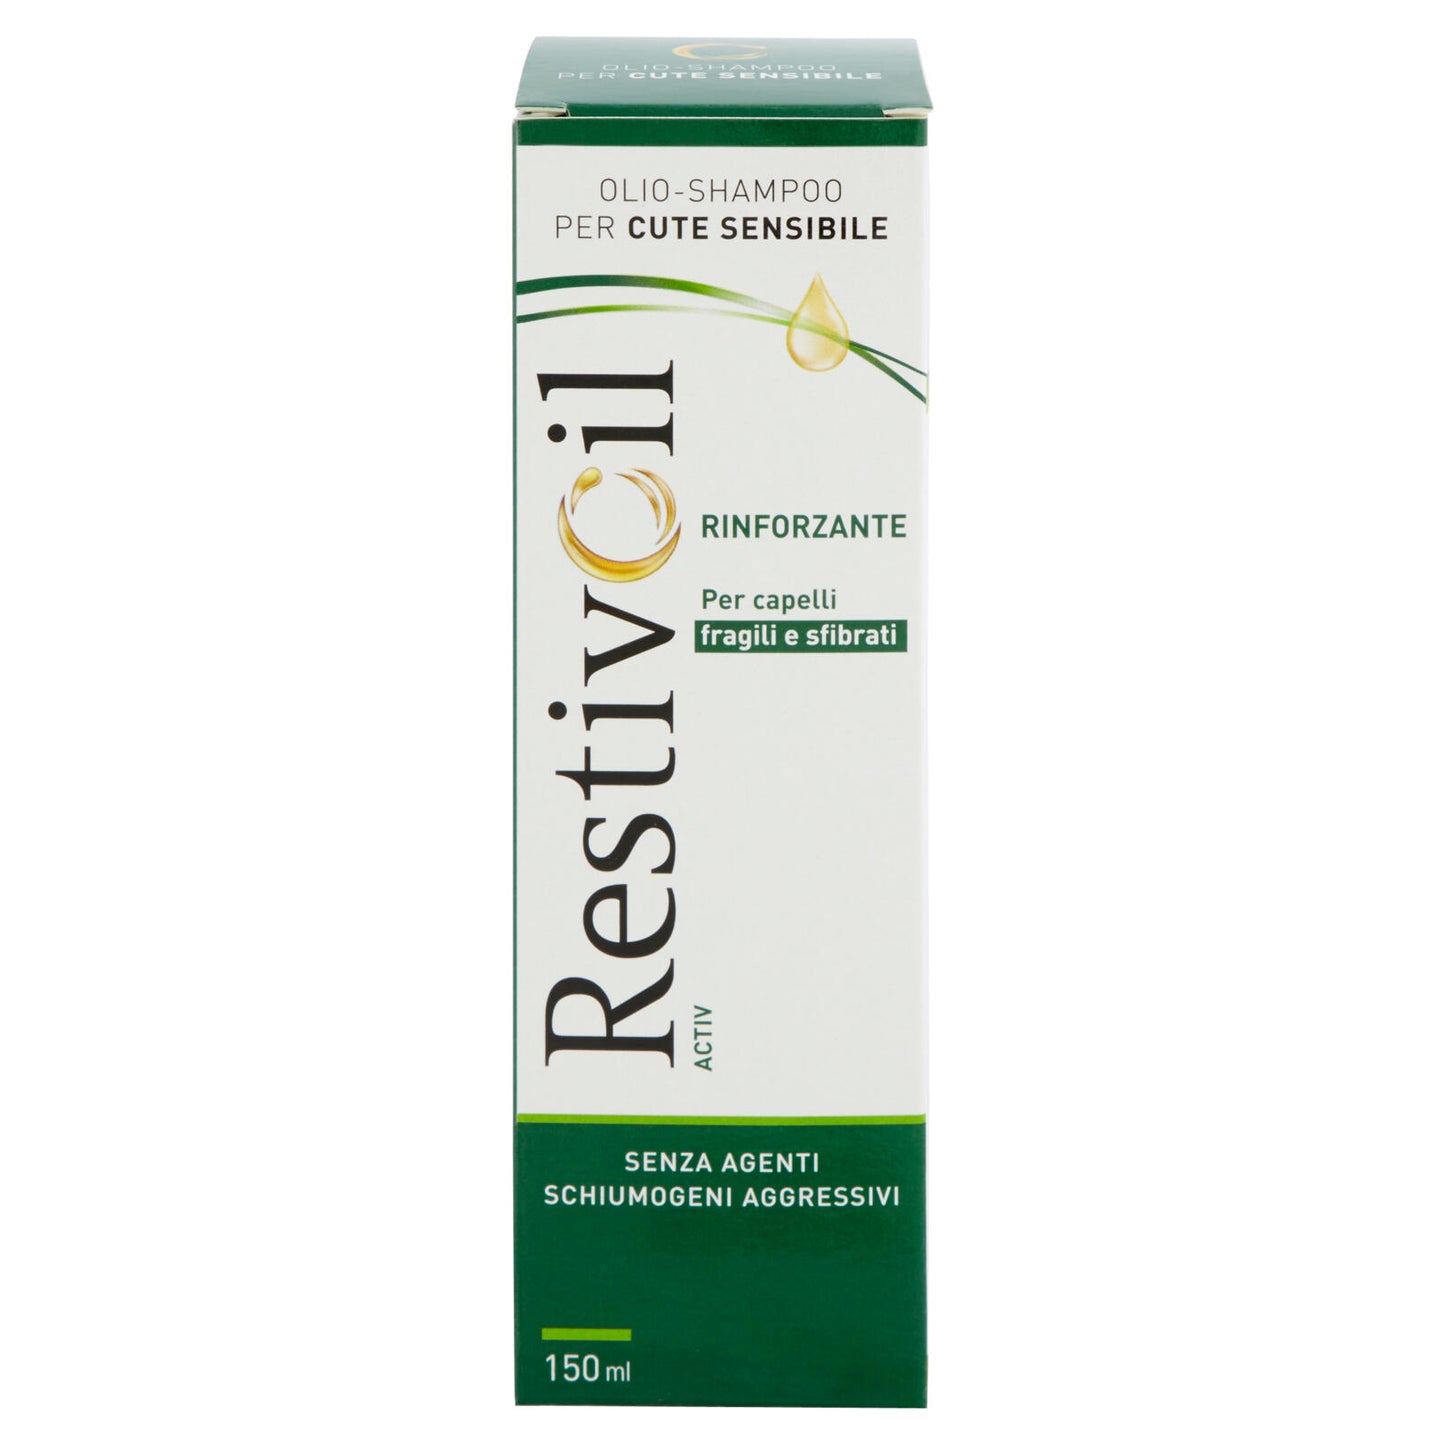 RestivOil Activ Olio-Shampoo per Cute Sensibile Rinforzante per capelli fragili e sfibrati 150 ml